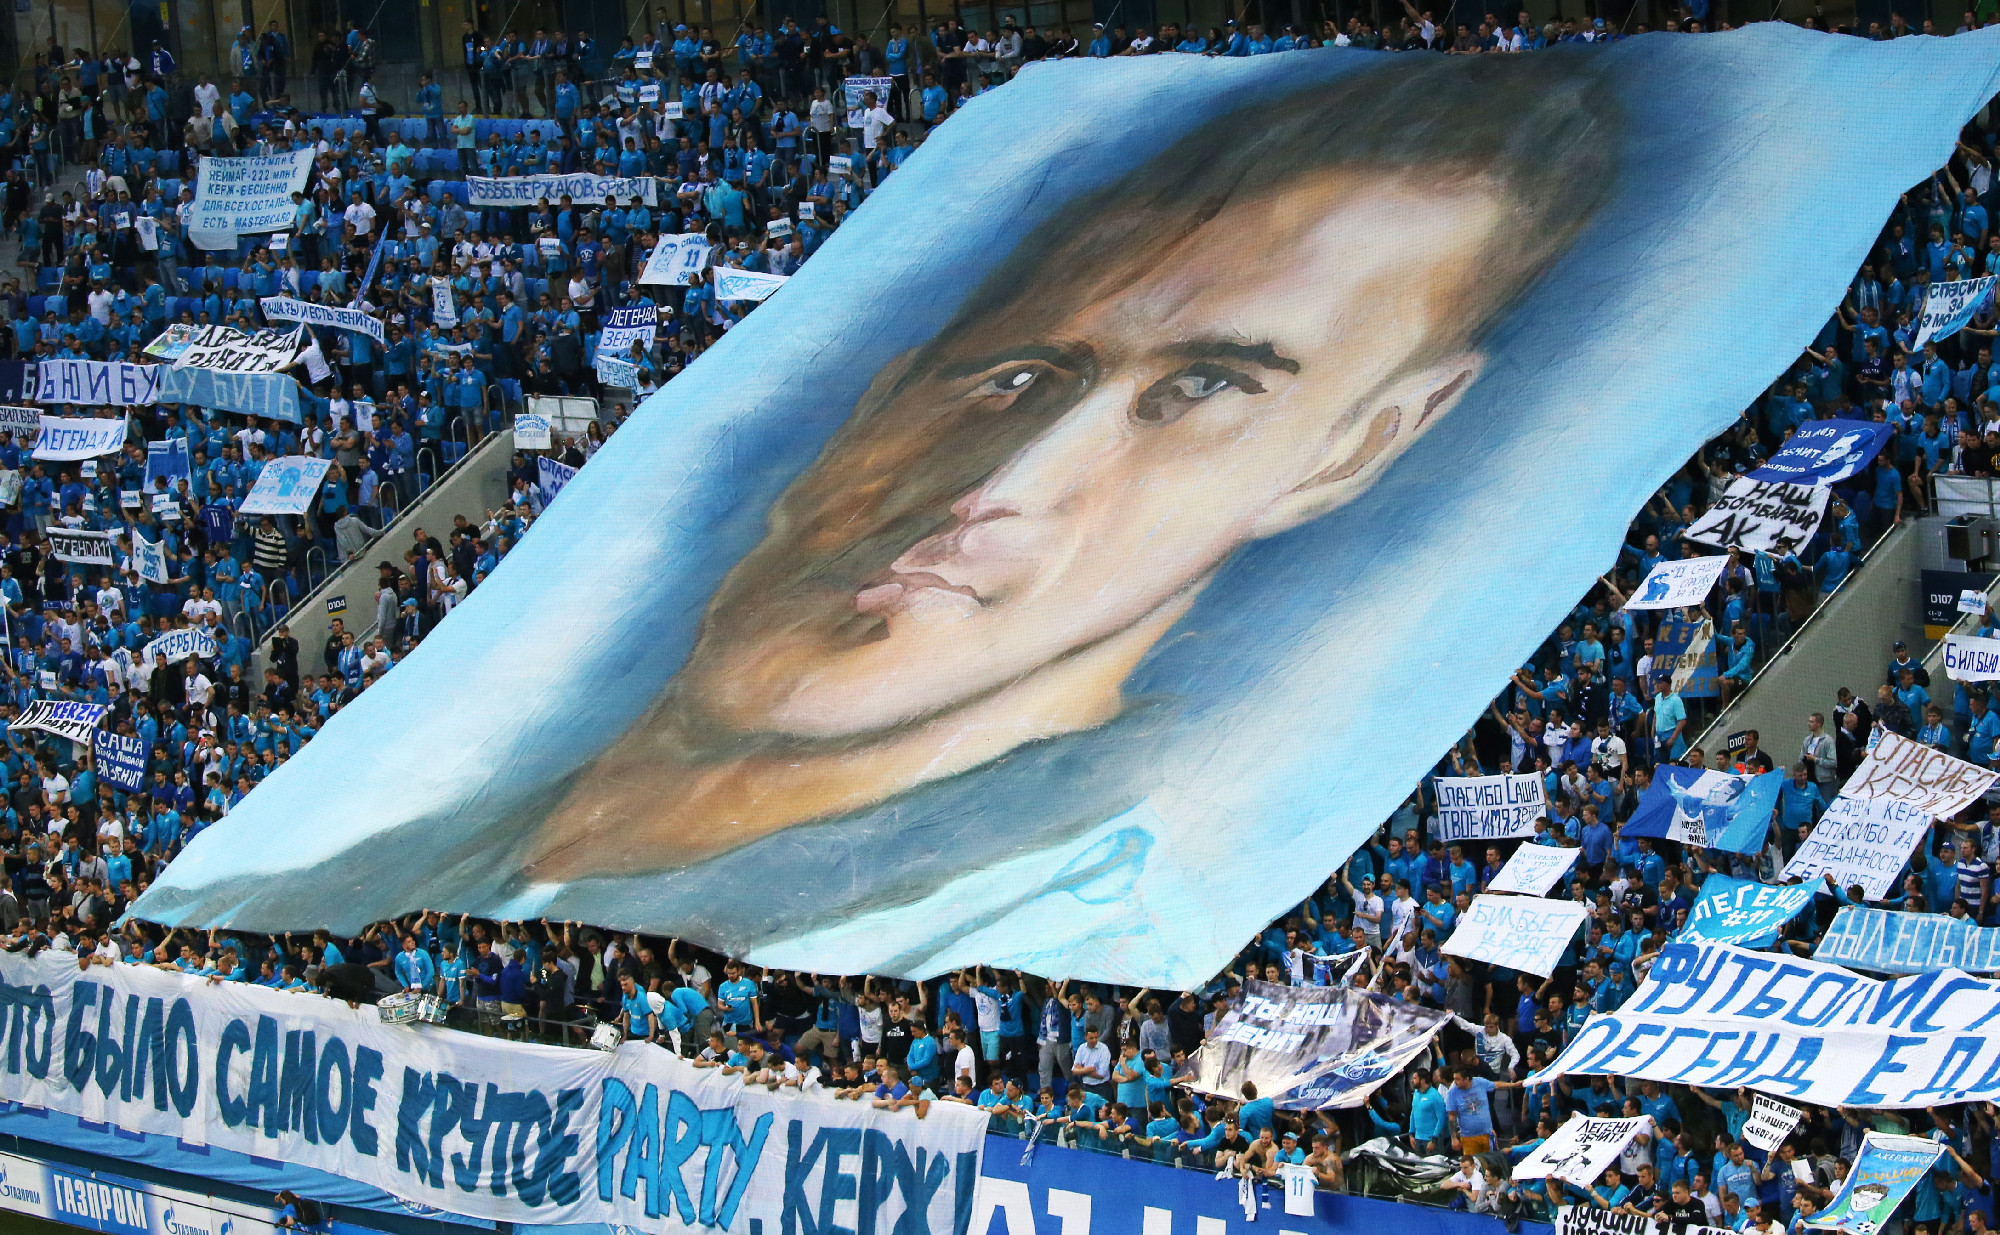 Часть баннеров была посвящена Александру Кержакову, который перед матчем попрощался с большим футболом.